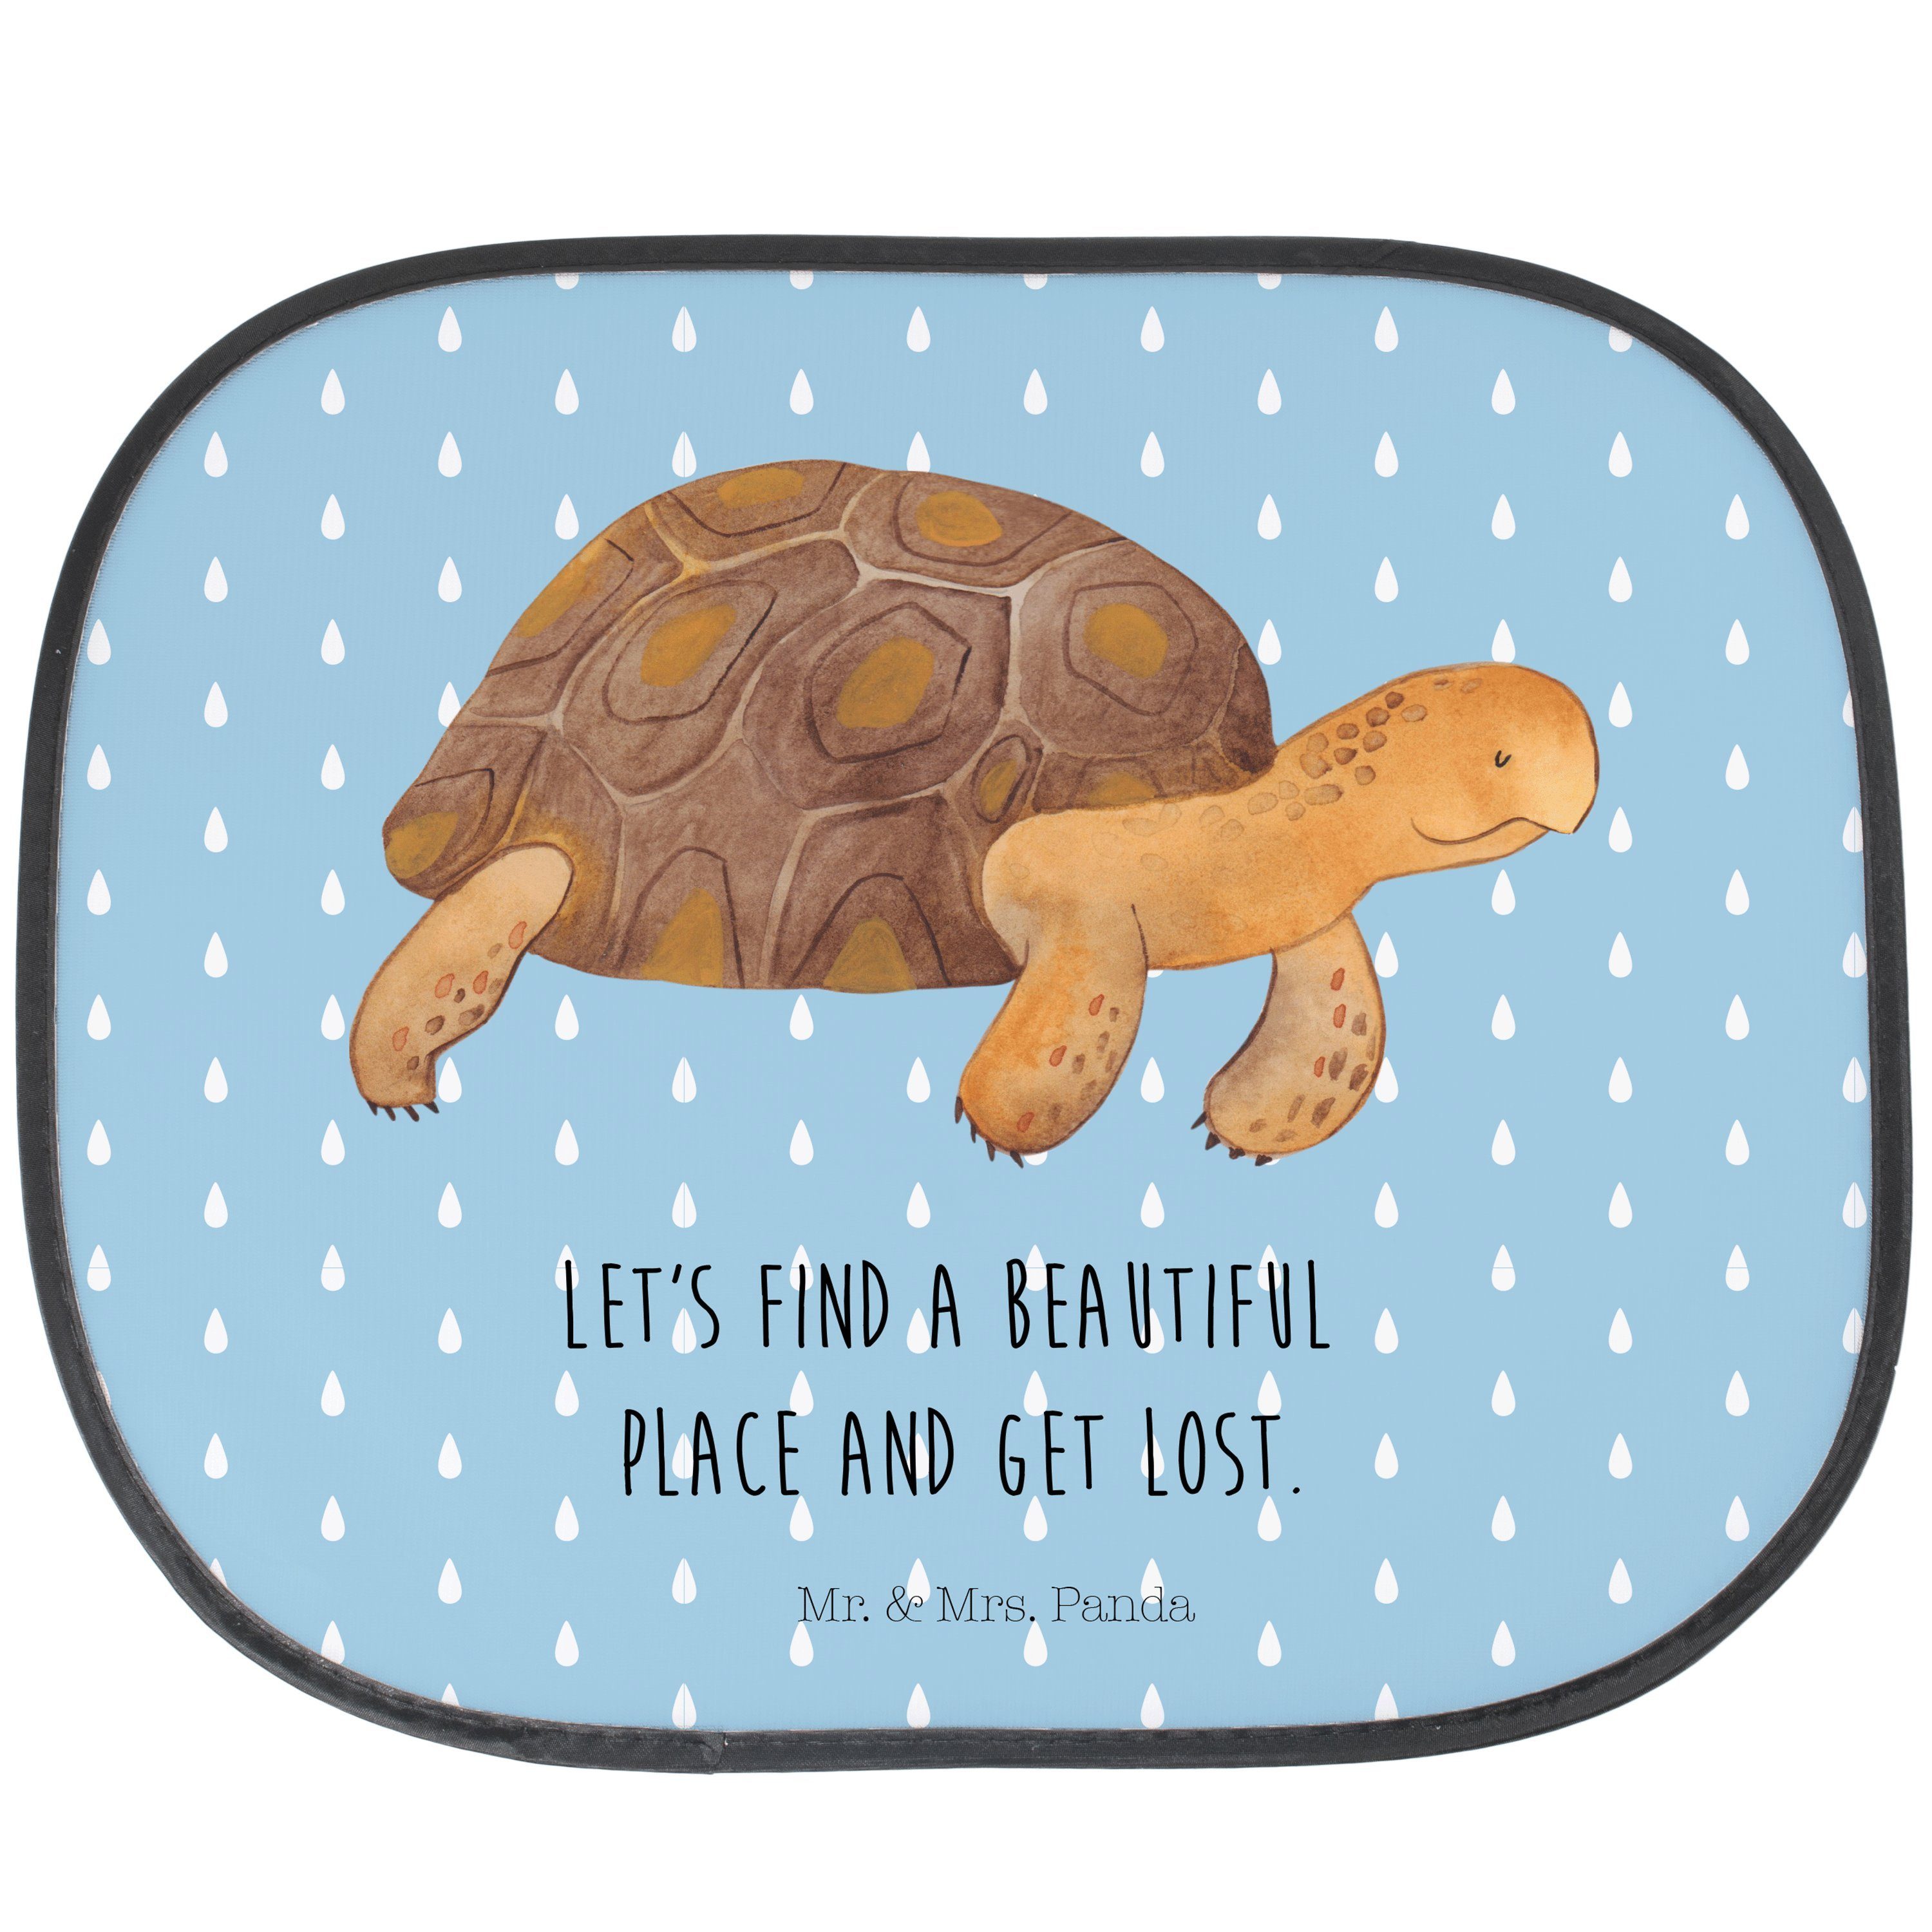 Sonnenschutz Schildkröte marschiert - Blau Pastell - Geschenk, Sonne, Auto Sonnens, Mr. & Mrs. Panda, Seidenmatt